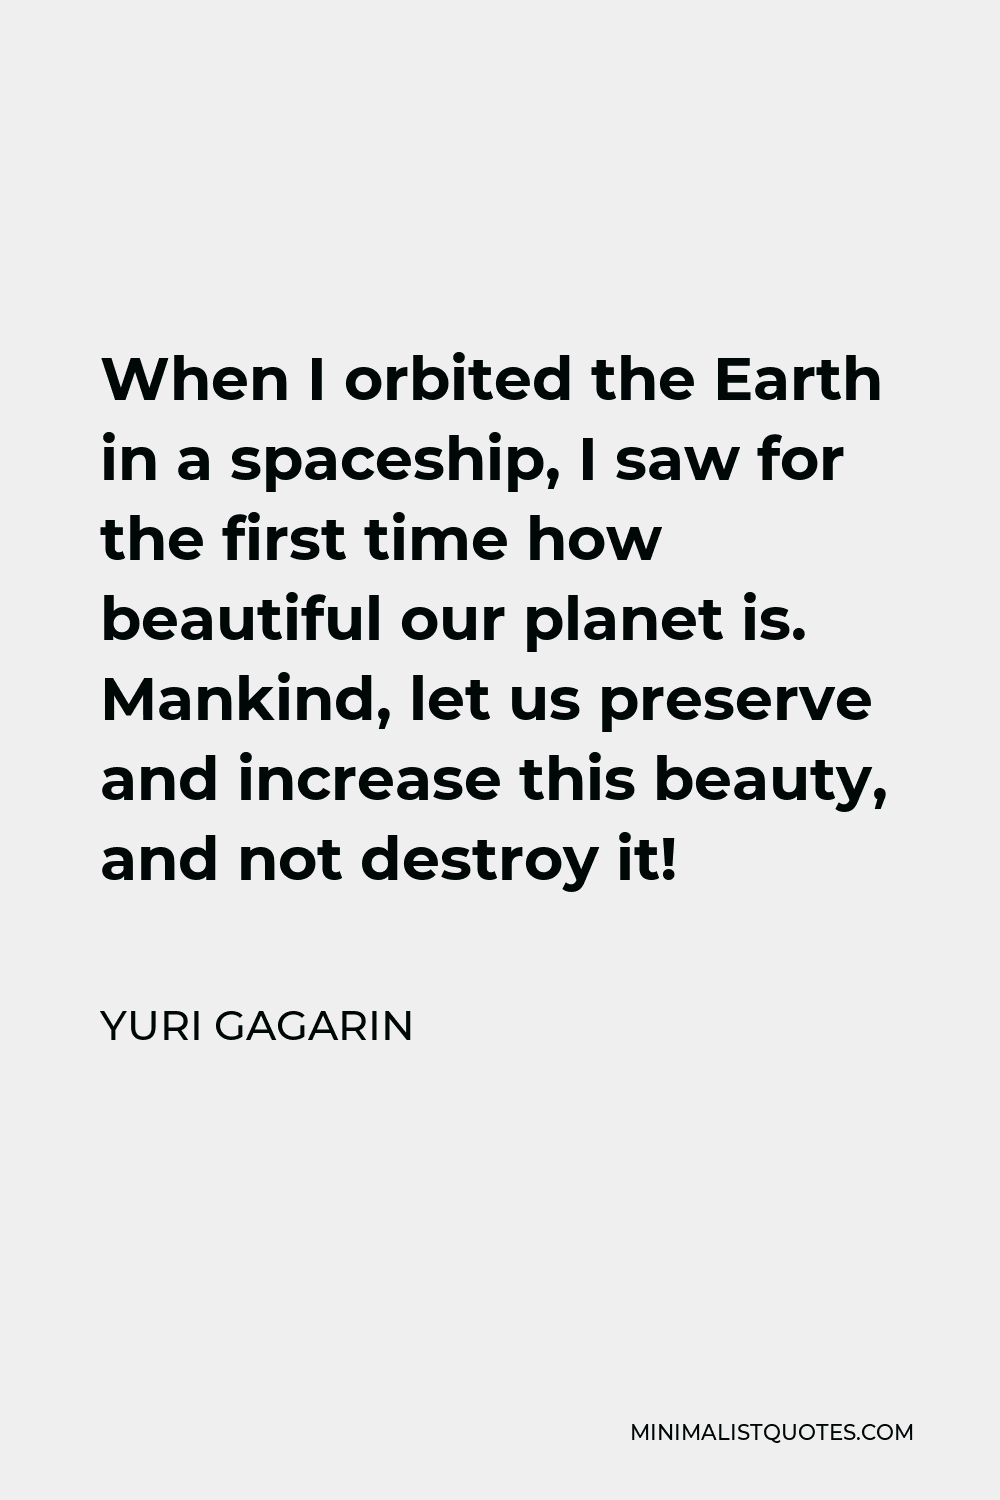 yuri gagarin quotes